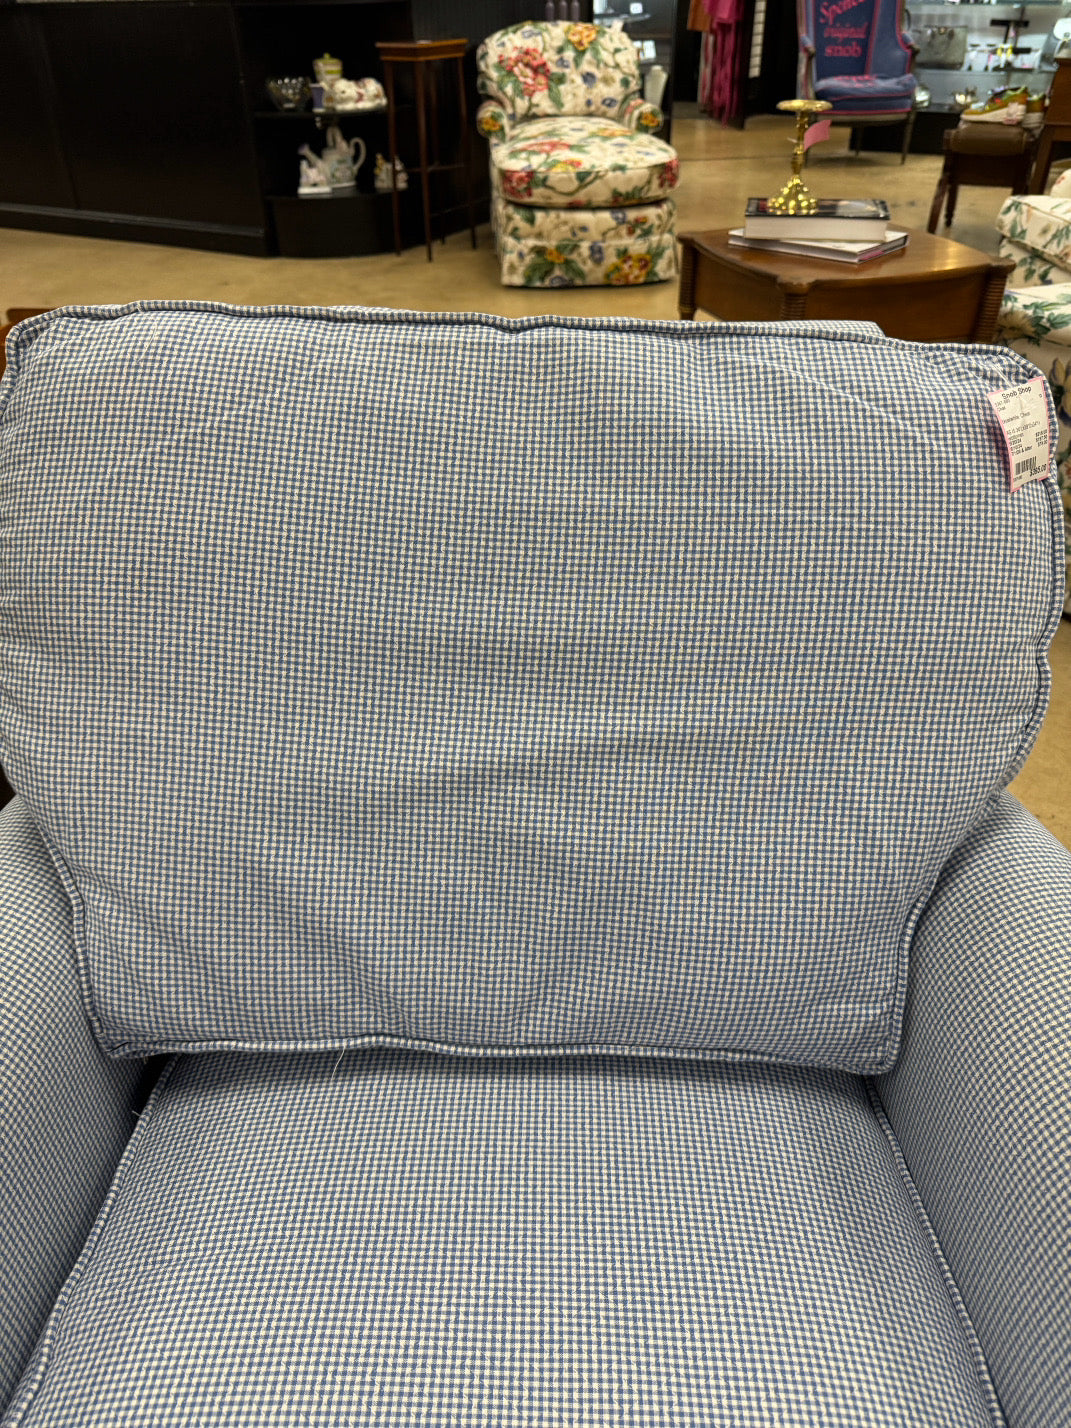 ROWE FURNITURE Blue & White Check Chair & Ottoman